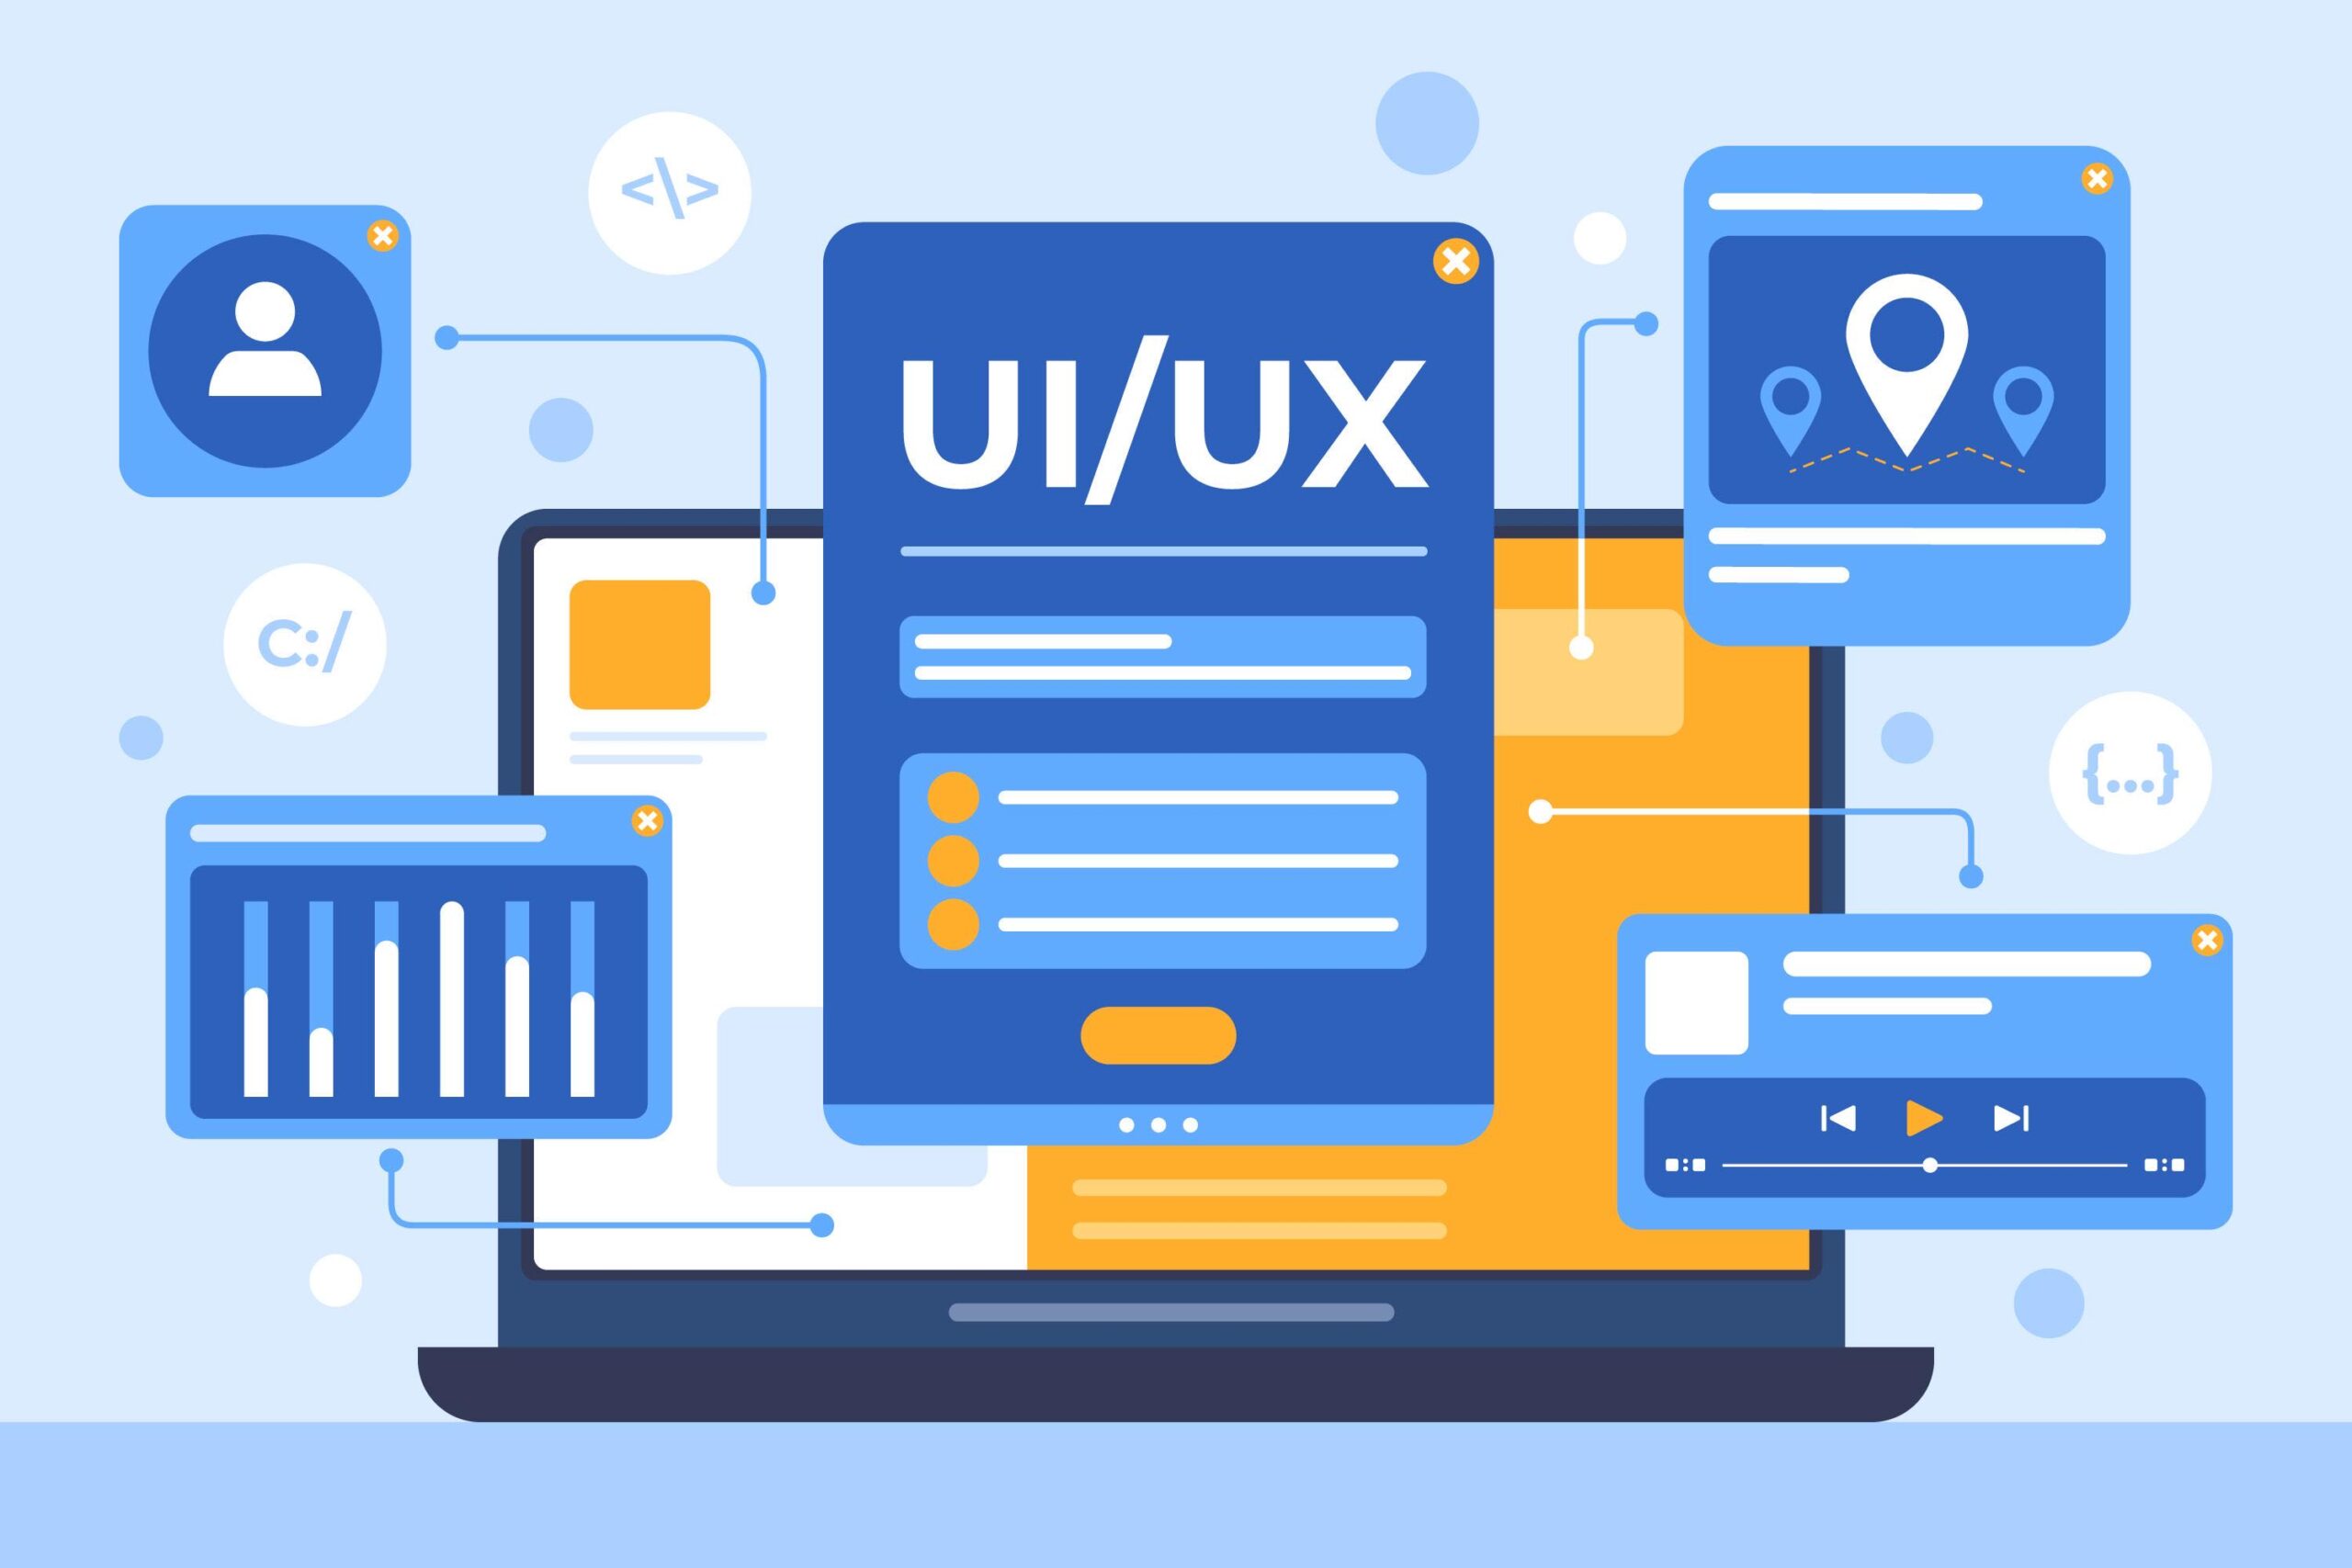 UI/UX Design, Web design, Mobile App Design